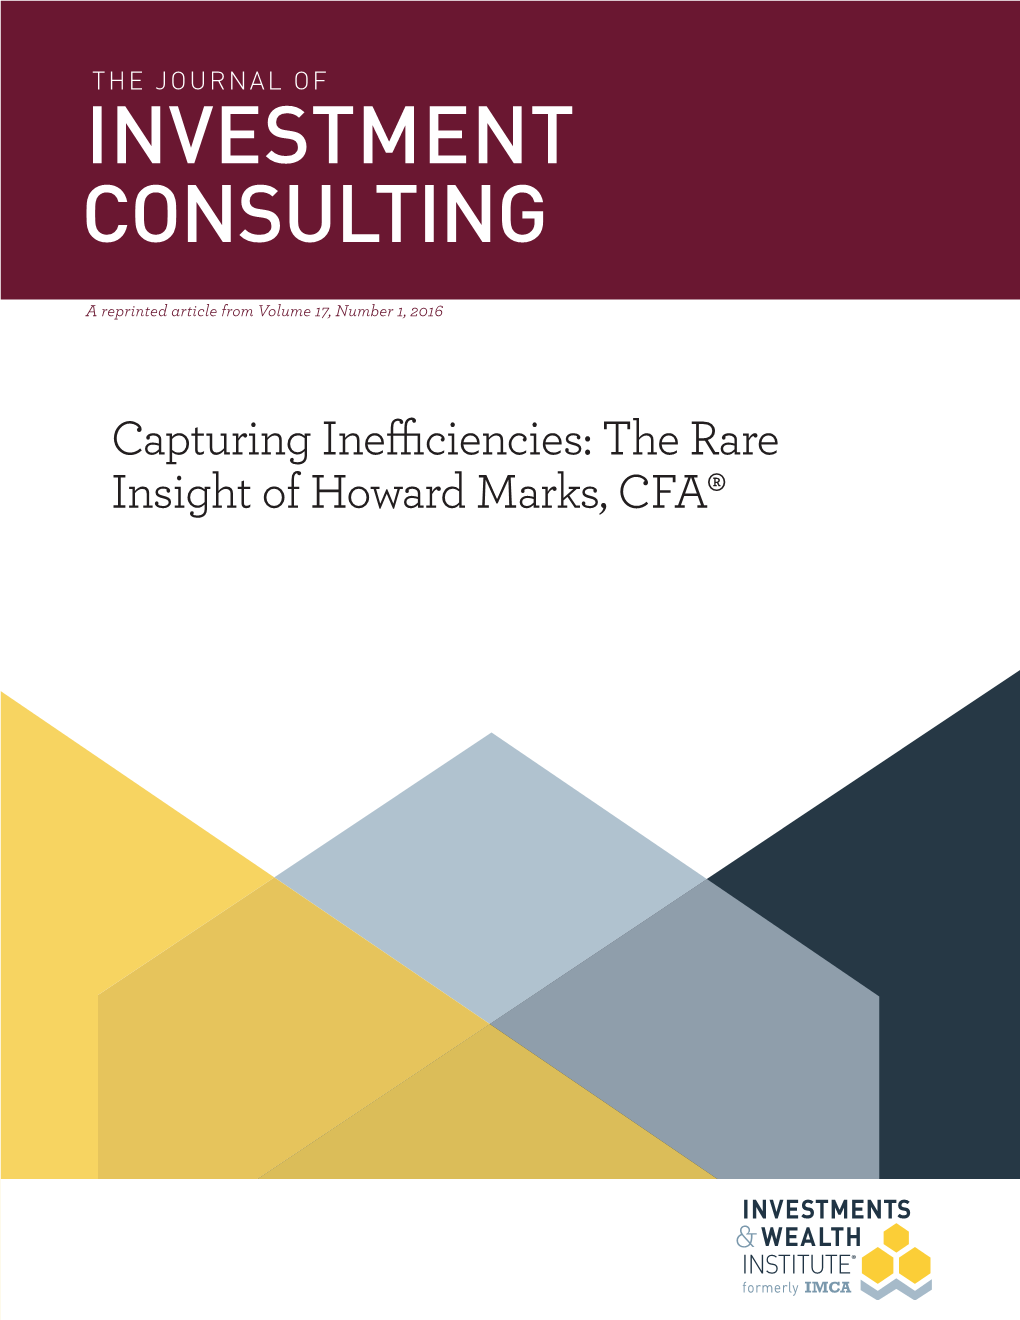 Howard Marks, CFA® the MASTERS SERIES | the Rare Insight of Howard Marks, CFA®